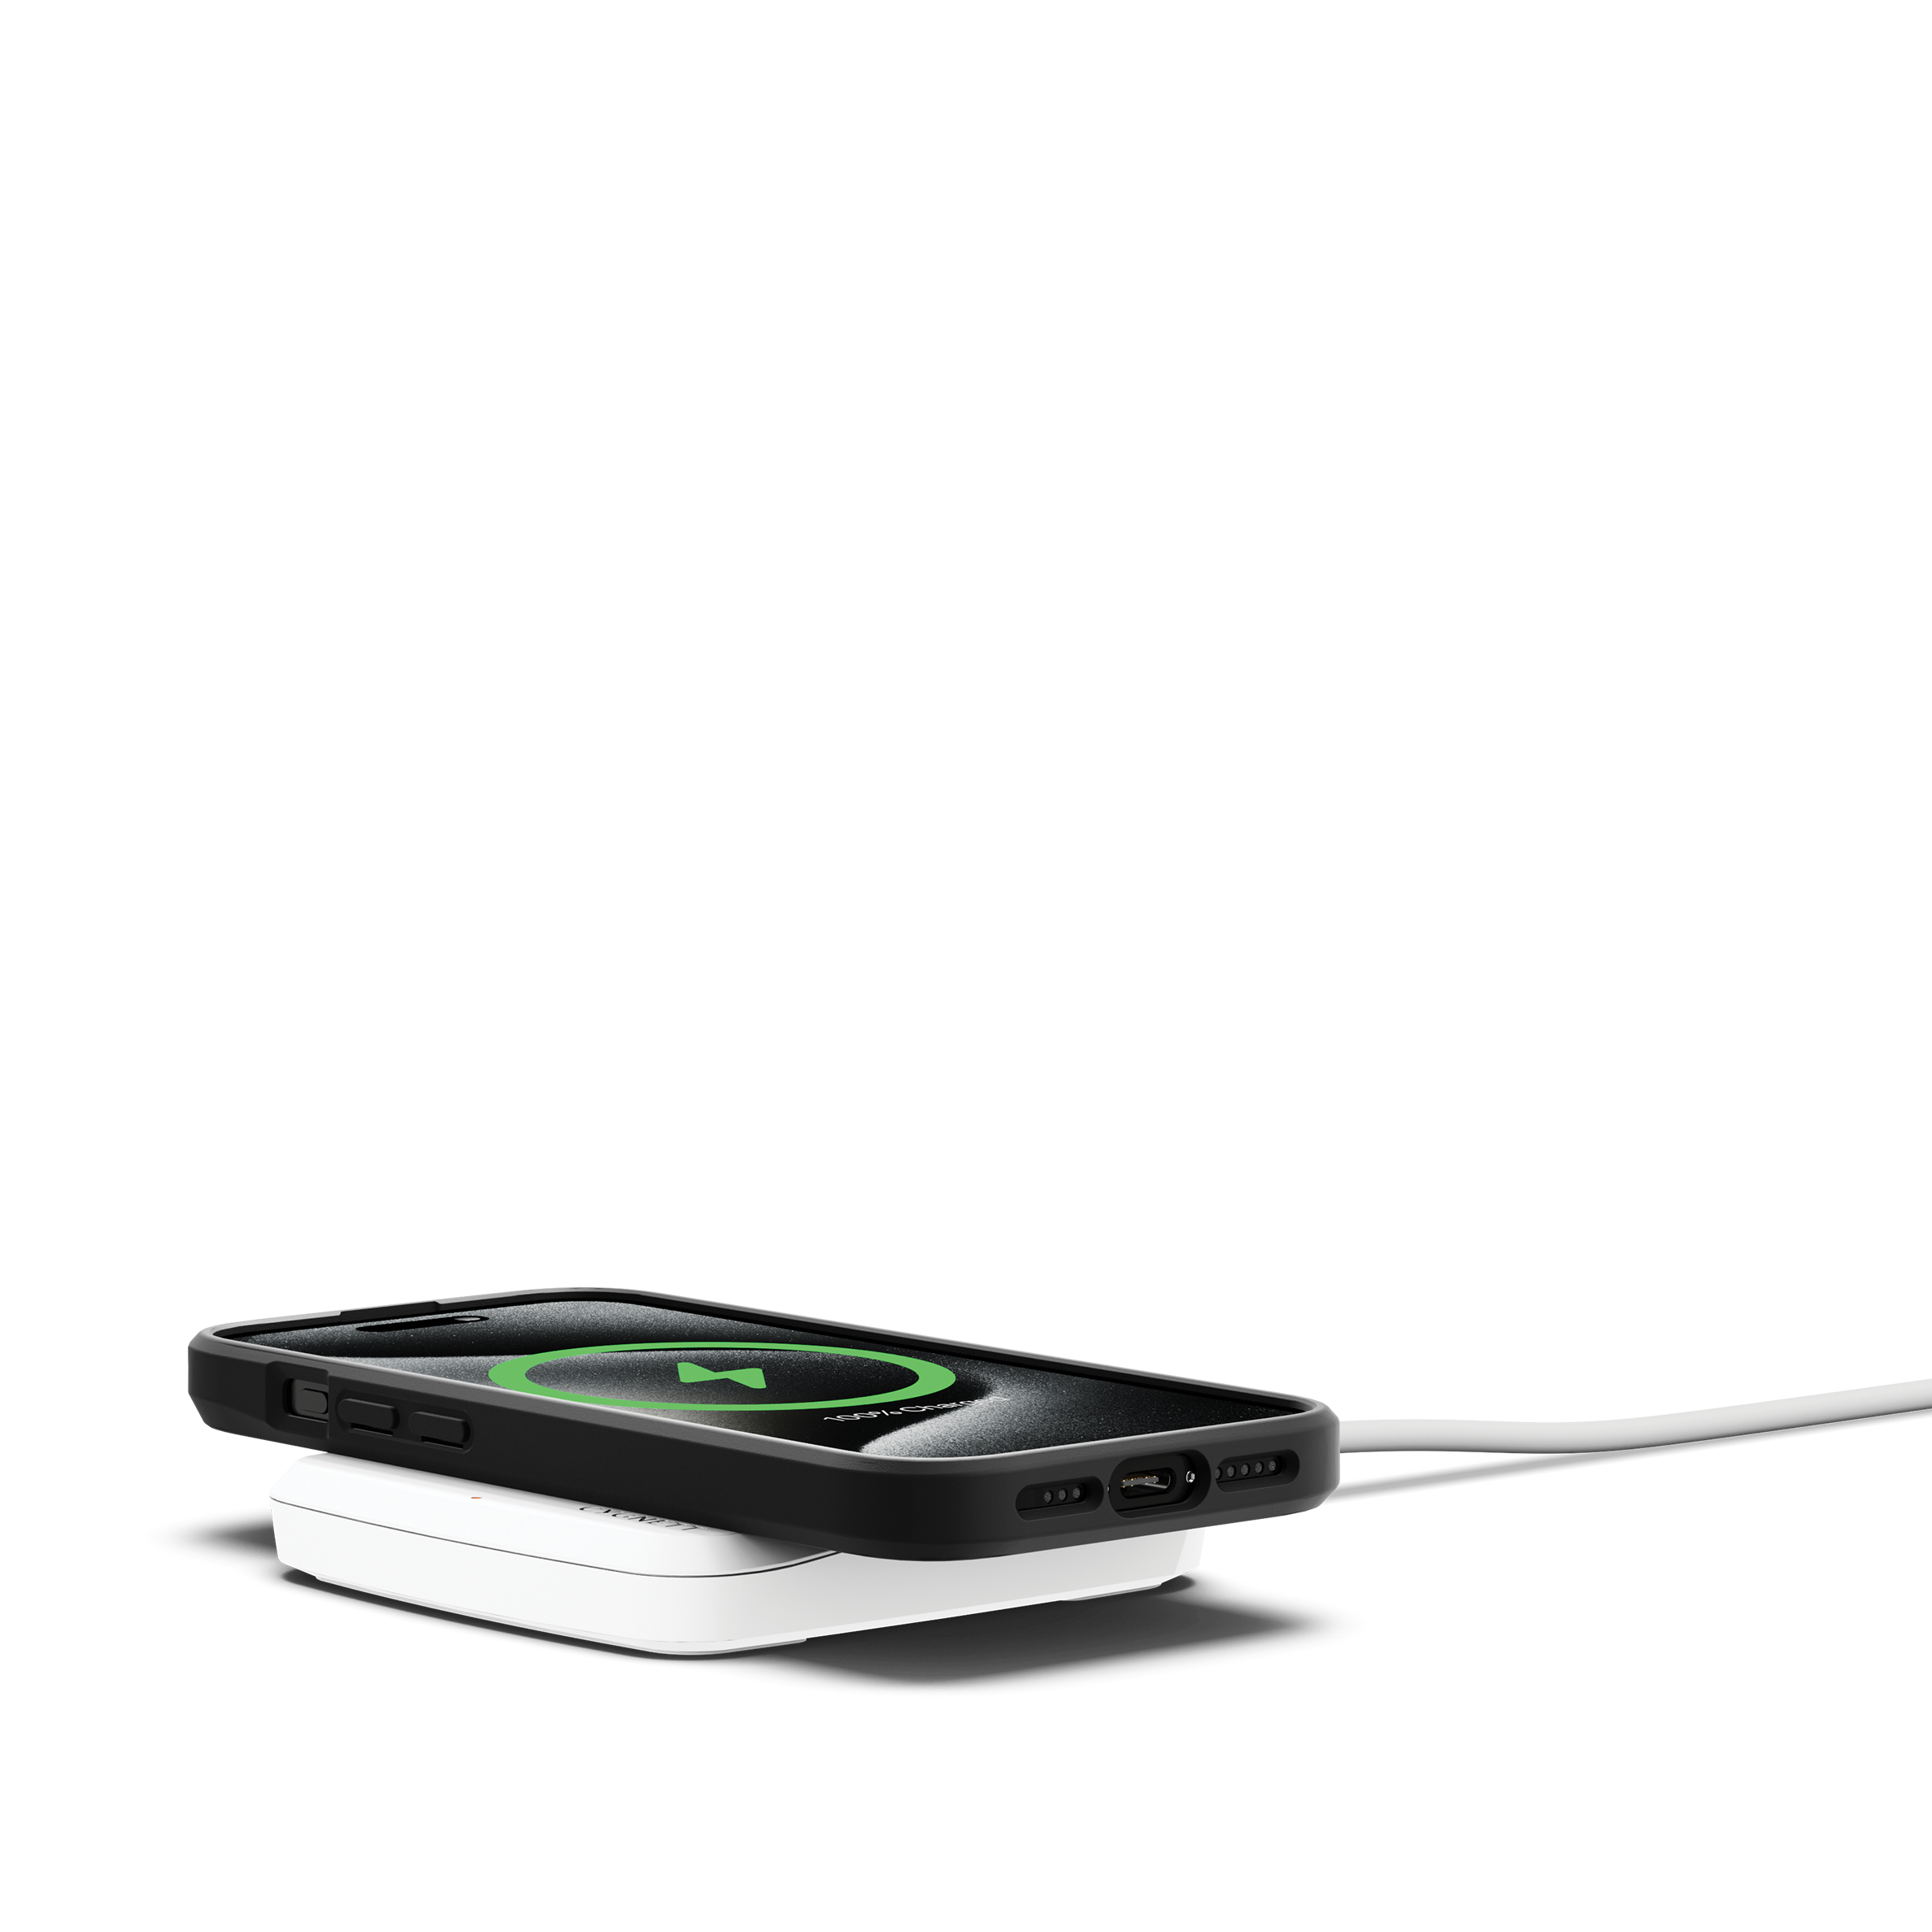 15W Wireless Phone Charger - Cygnett (AU)